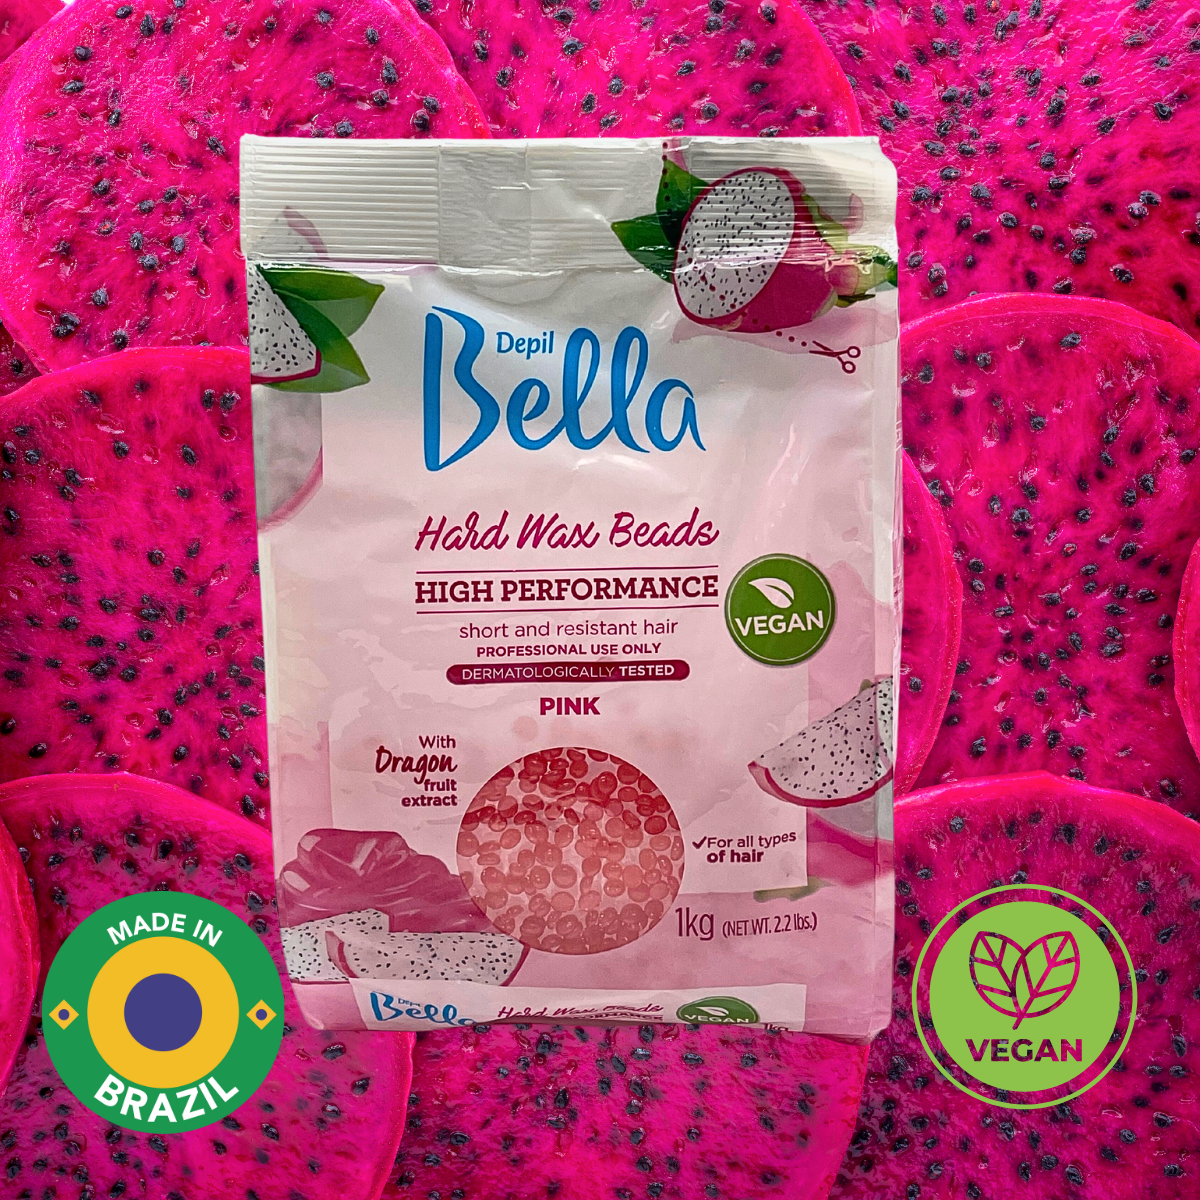 Depil Bella Perlas de Cera Dura Confeti Pitaya Rosa - Depilación de Alto Rendimiento | Vegano 2.2 lbs - Compra cosmética profesional dedicada a la depilación